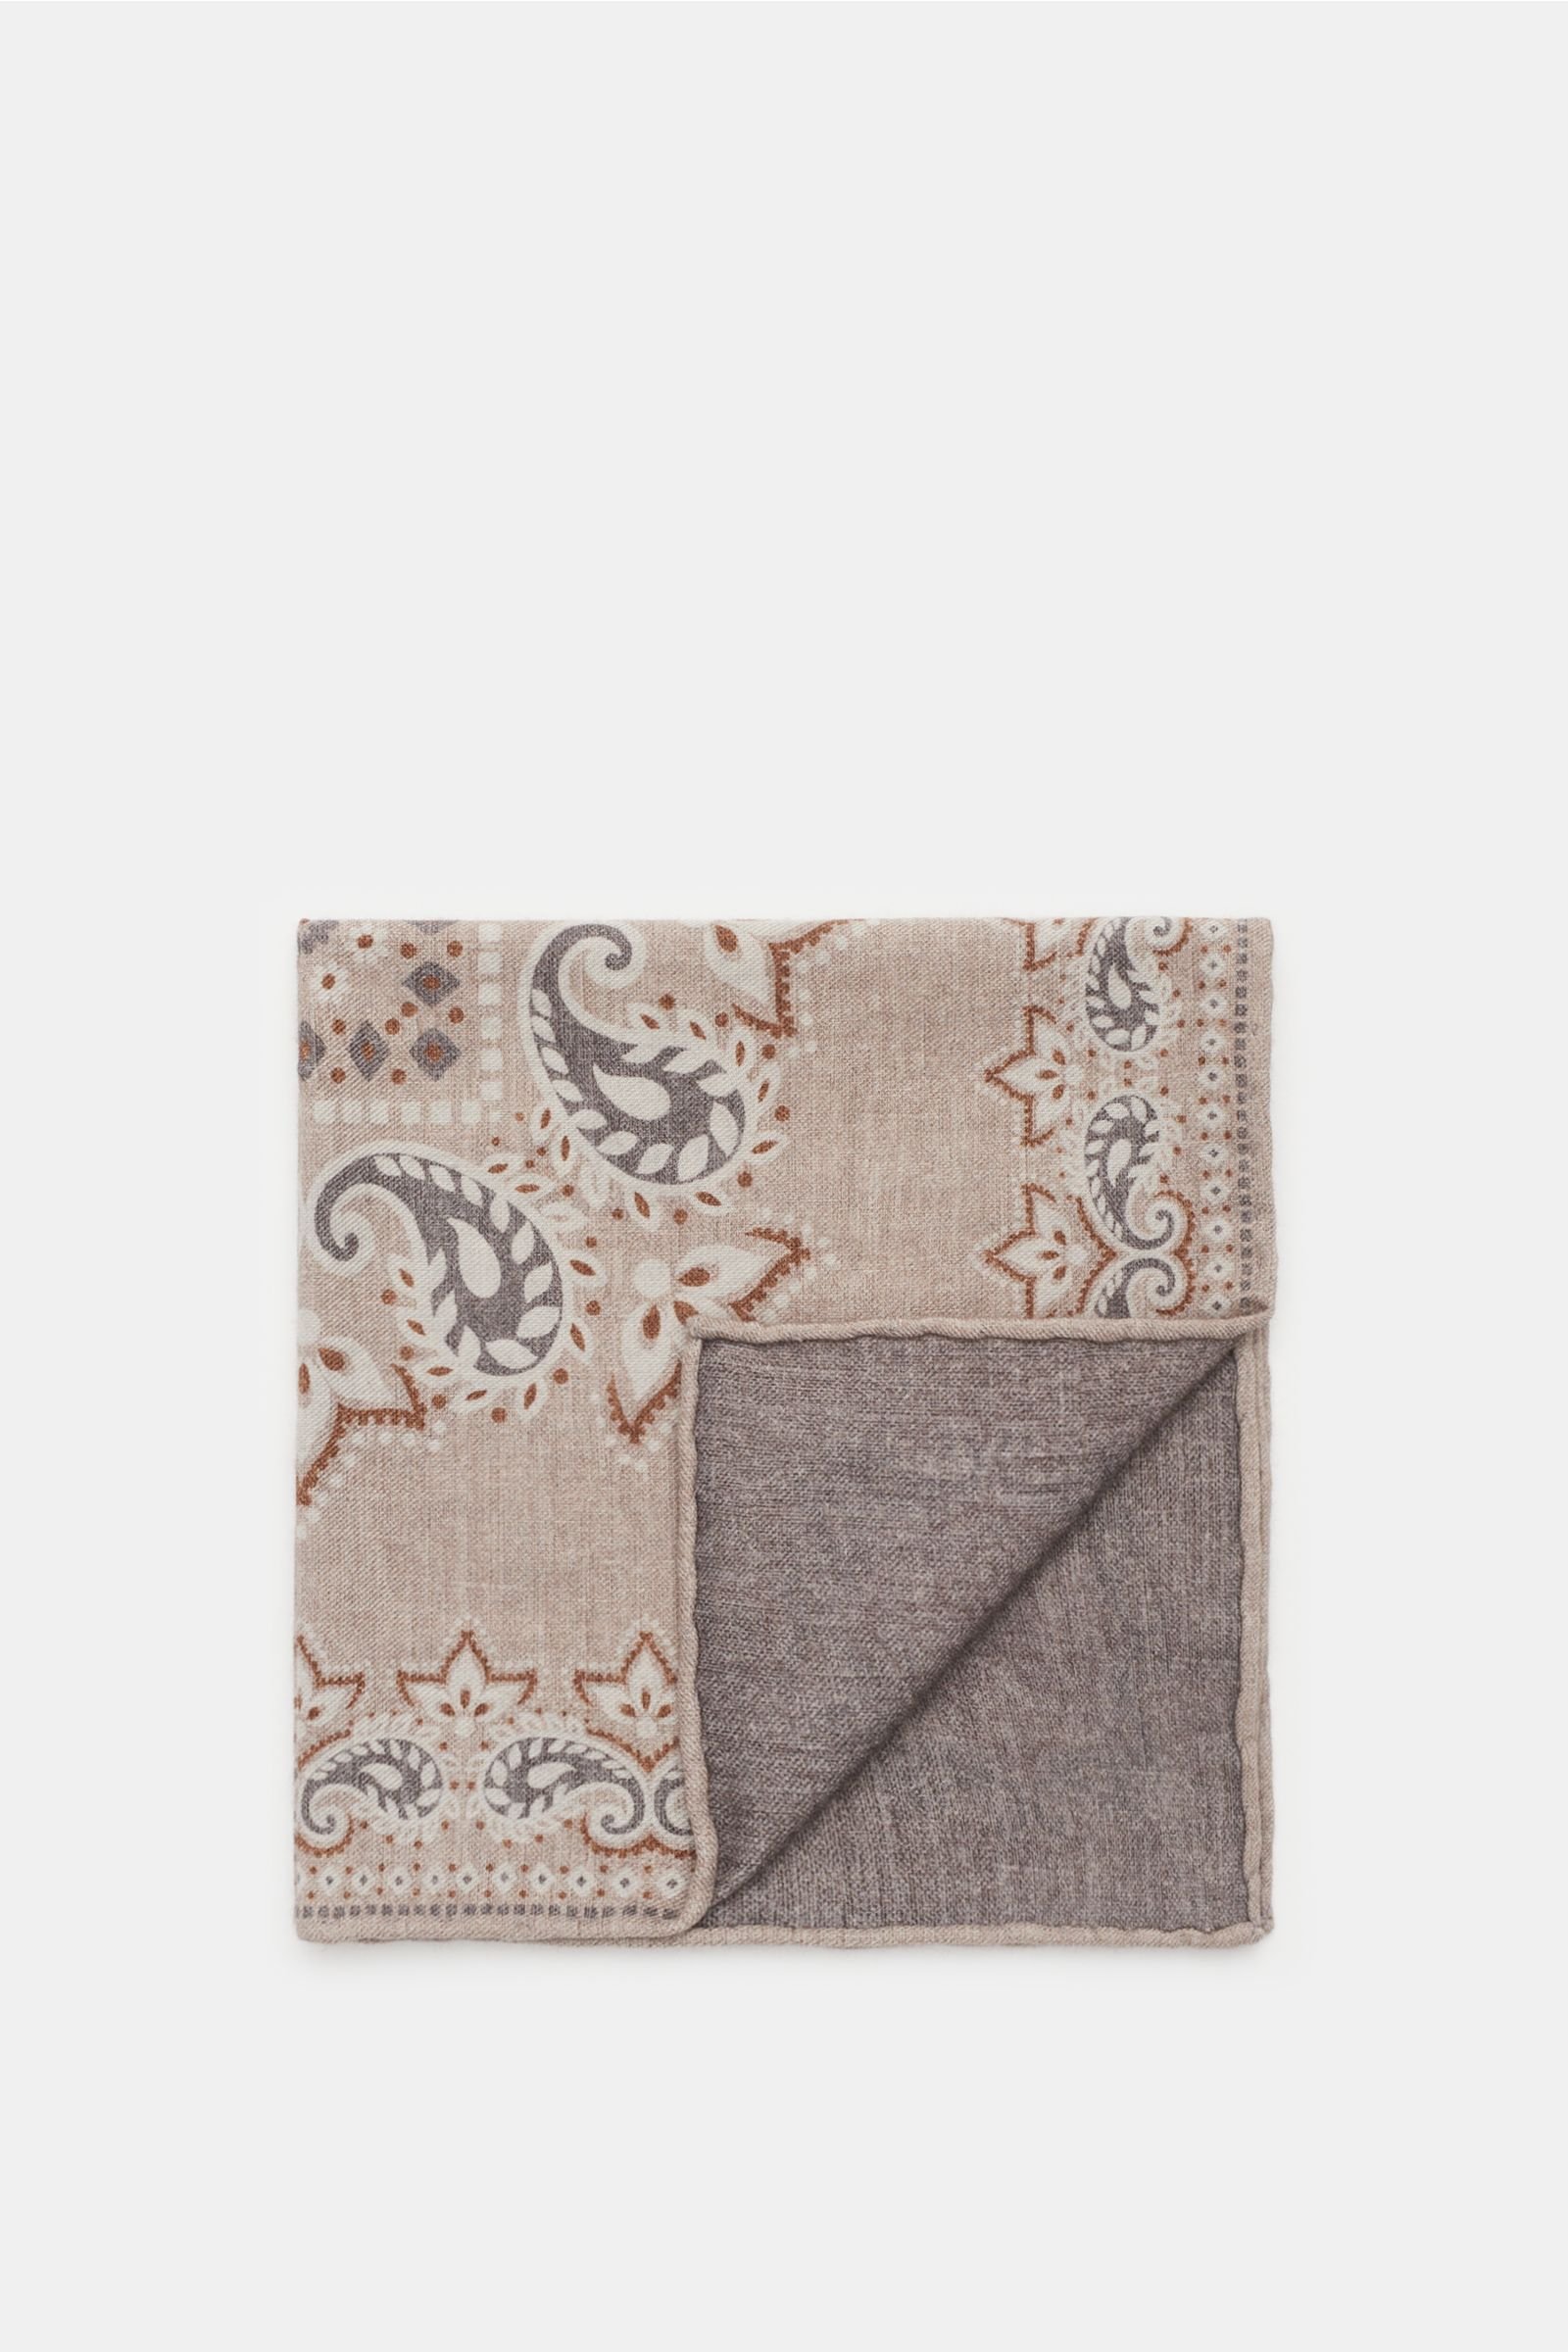 Pocket square beige/dark grey patterned